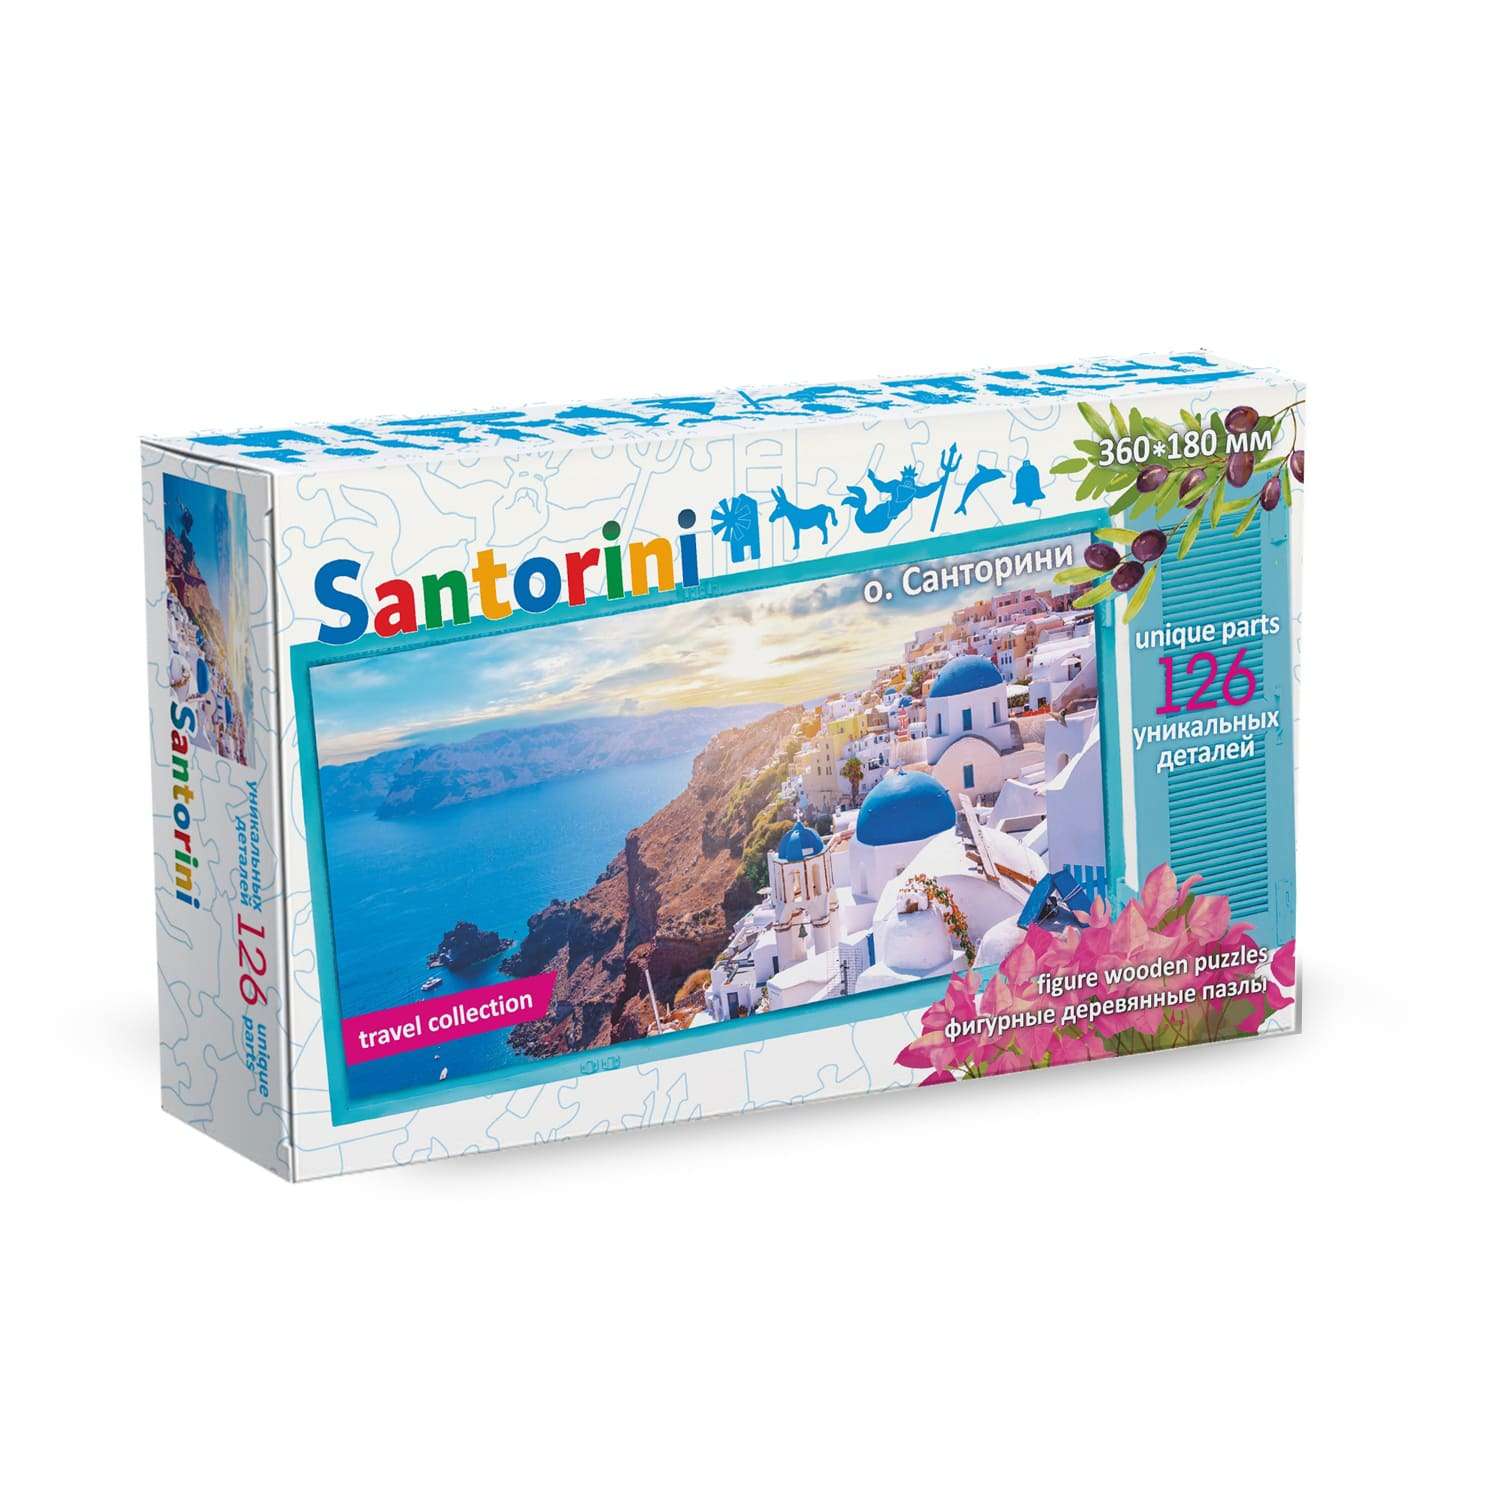 Пазл деревянный Нескучные игры Travel collection остров Санторини - фото 1